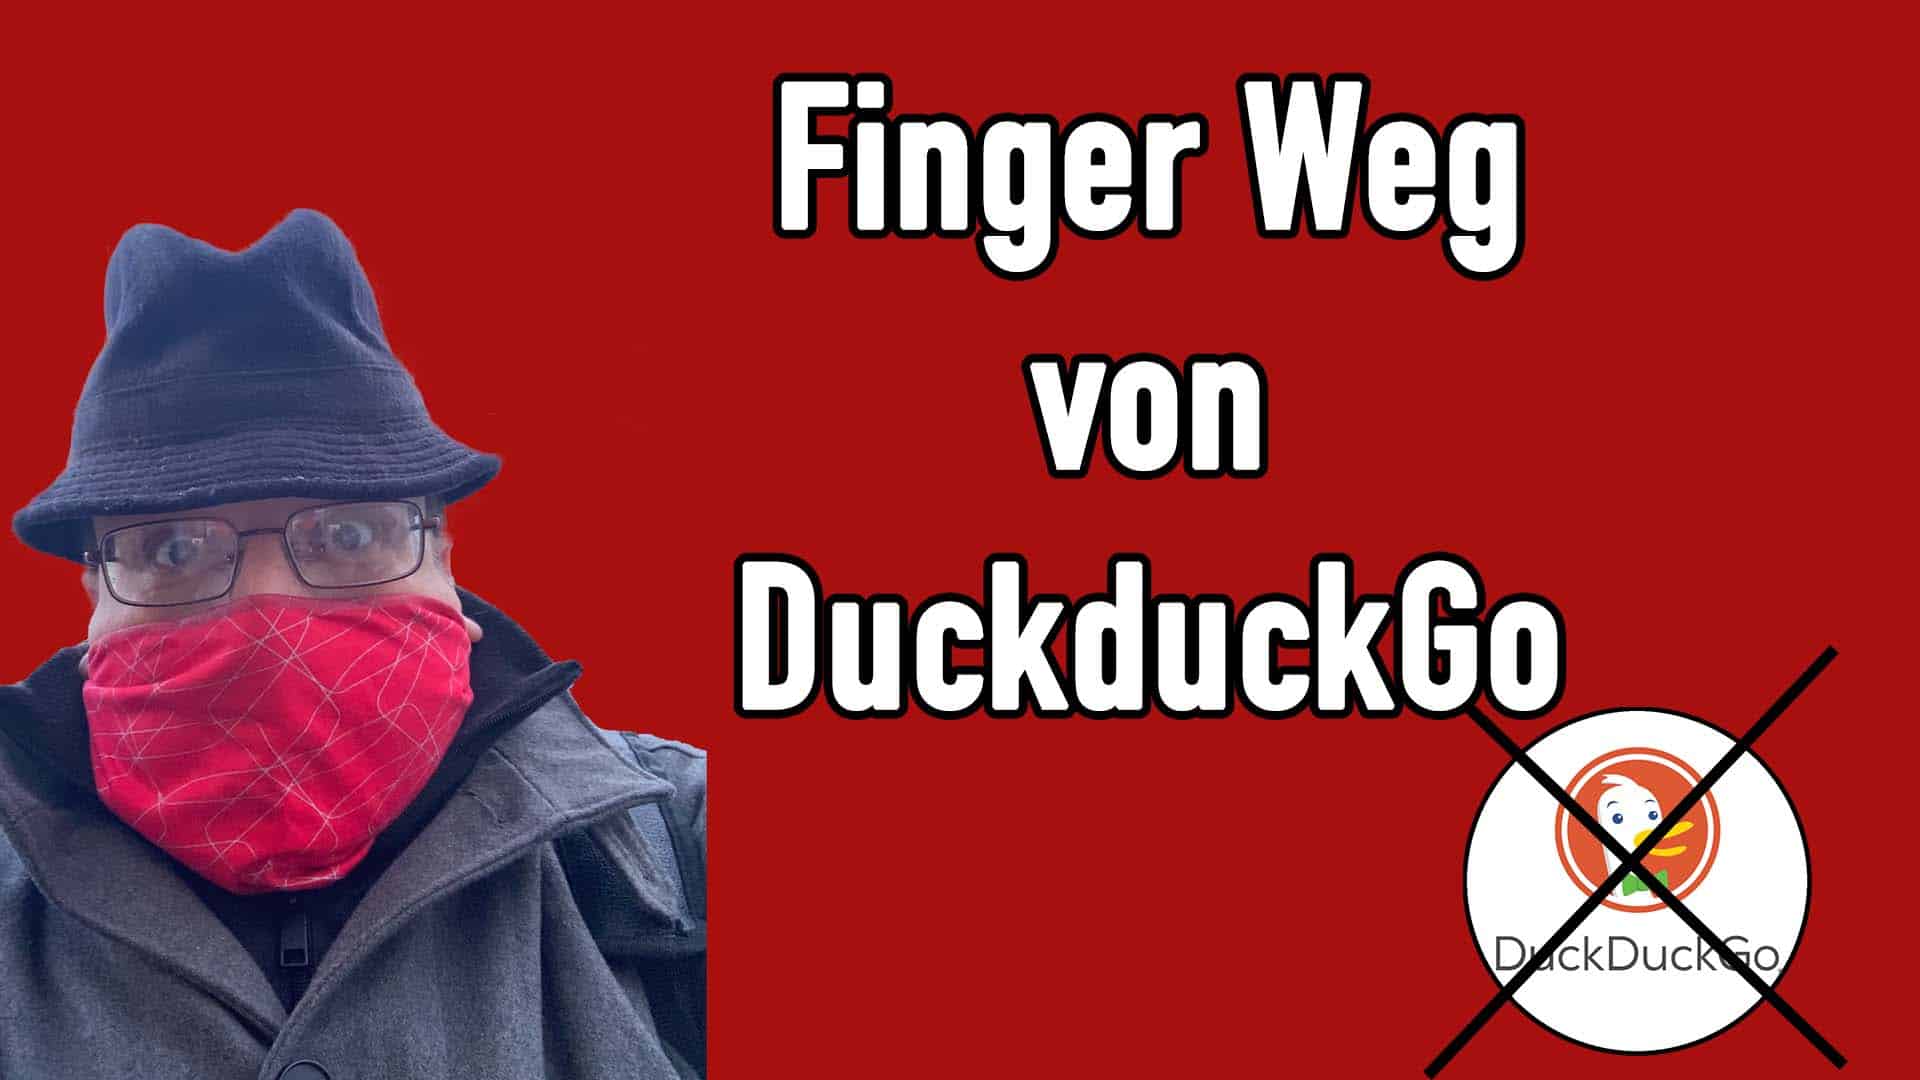 Finger weg von Duckduckgo – Sie zensieren und manipulieren Suchresultate